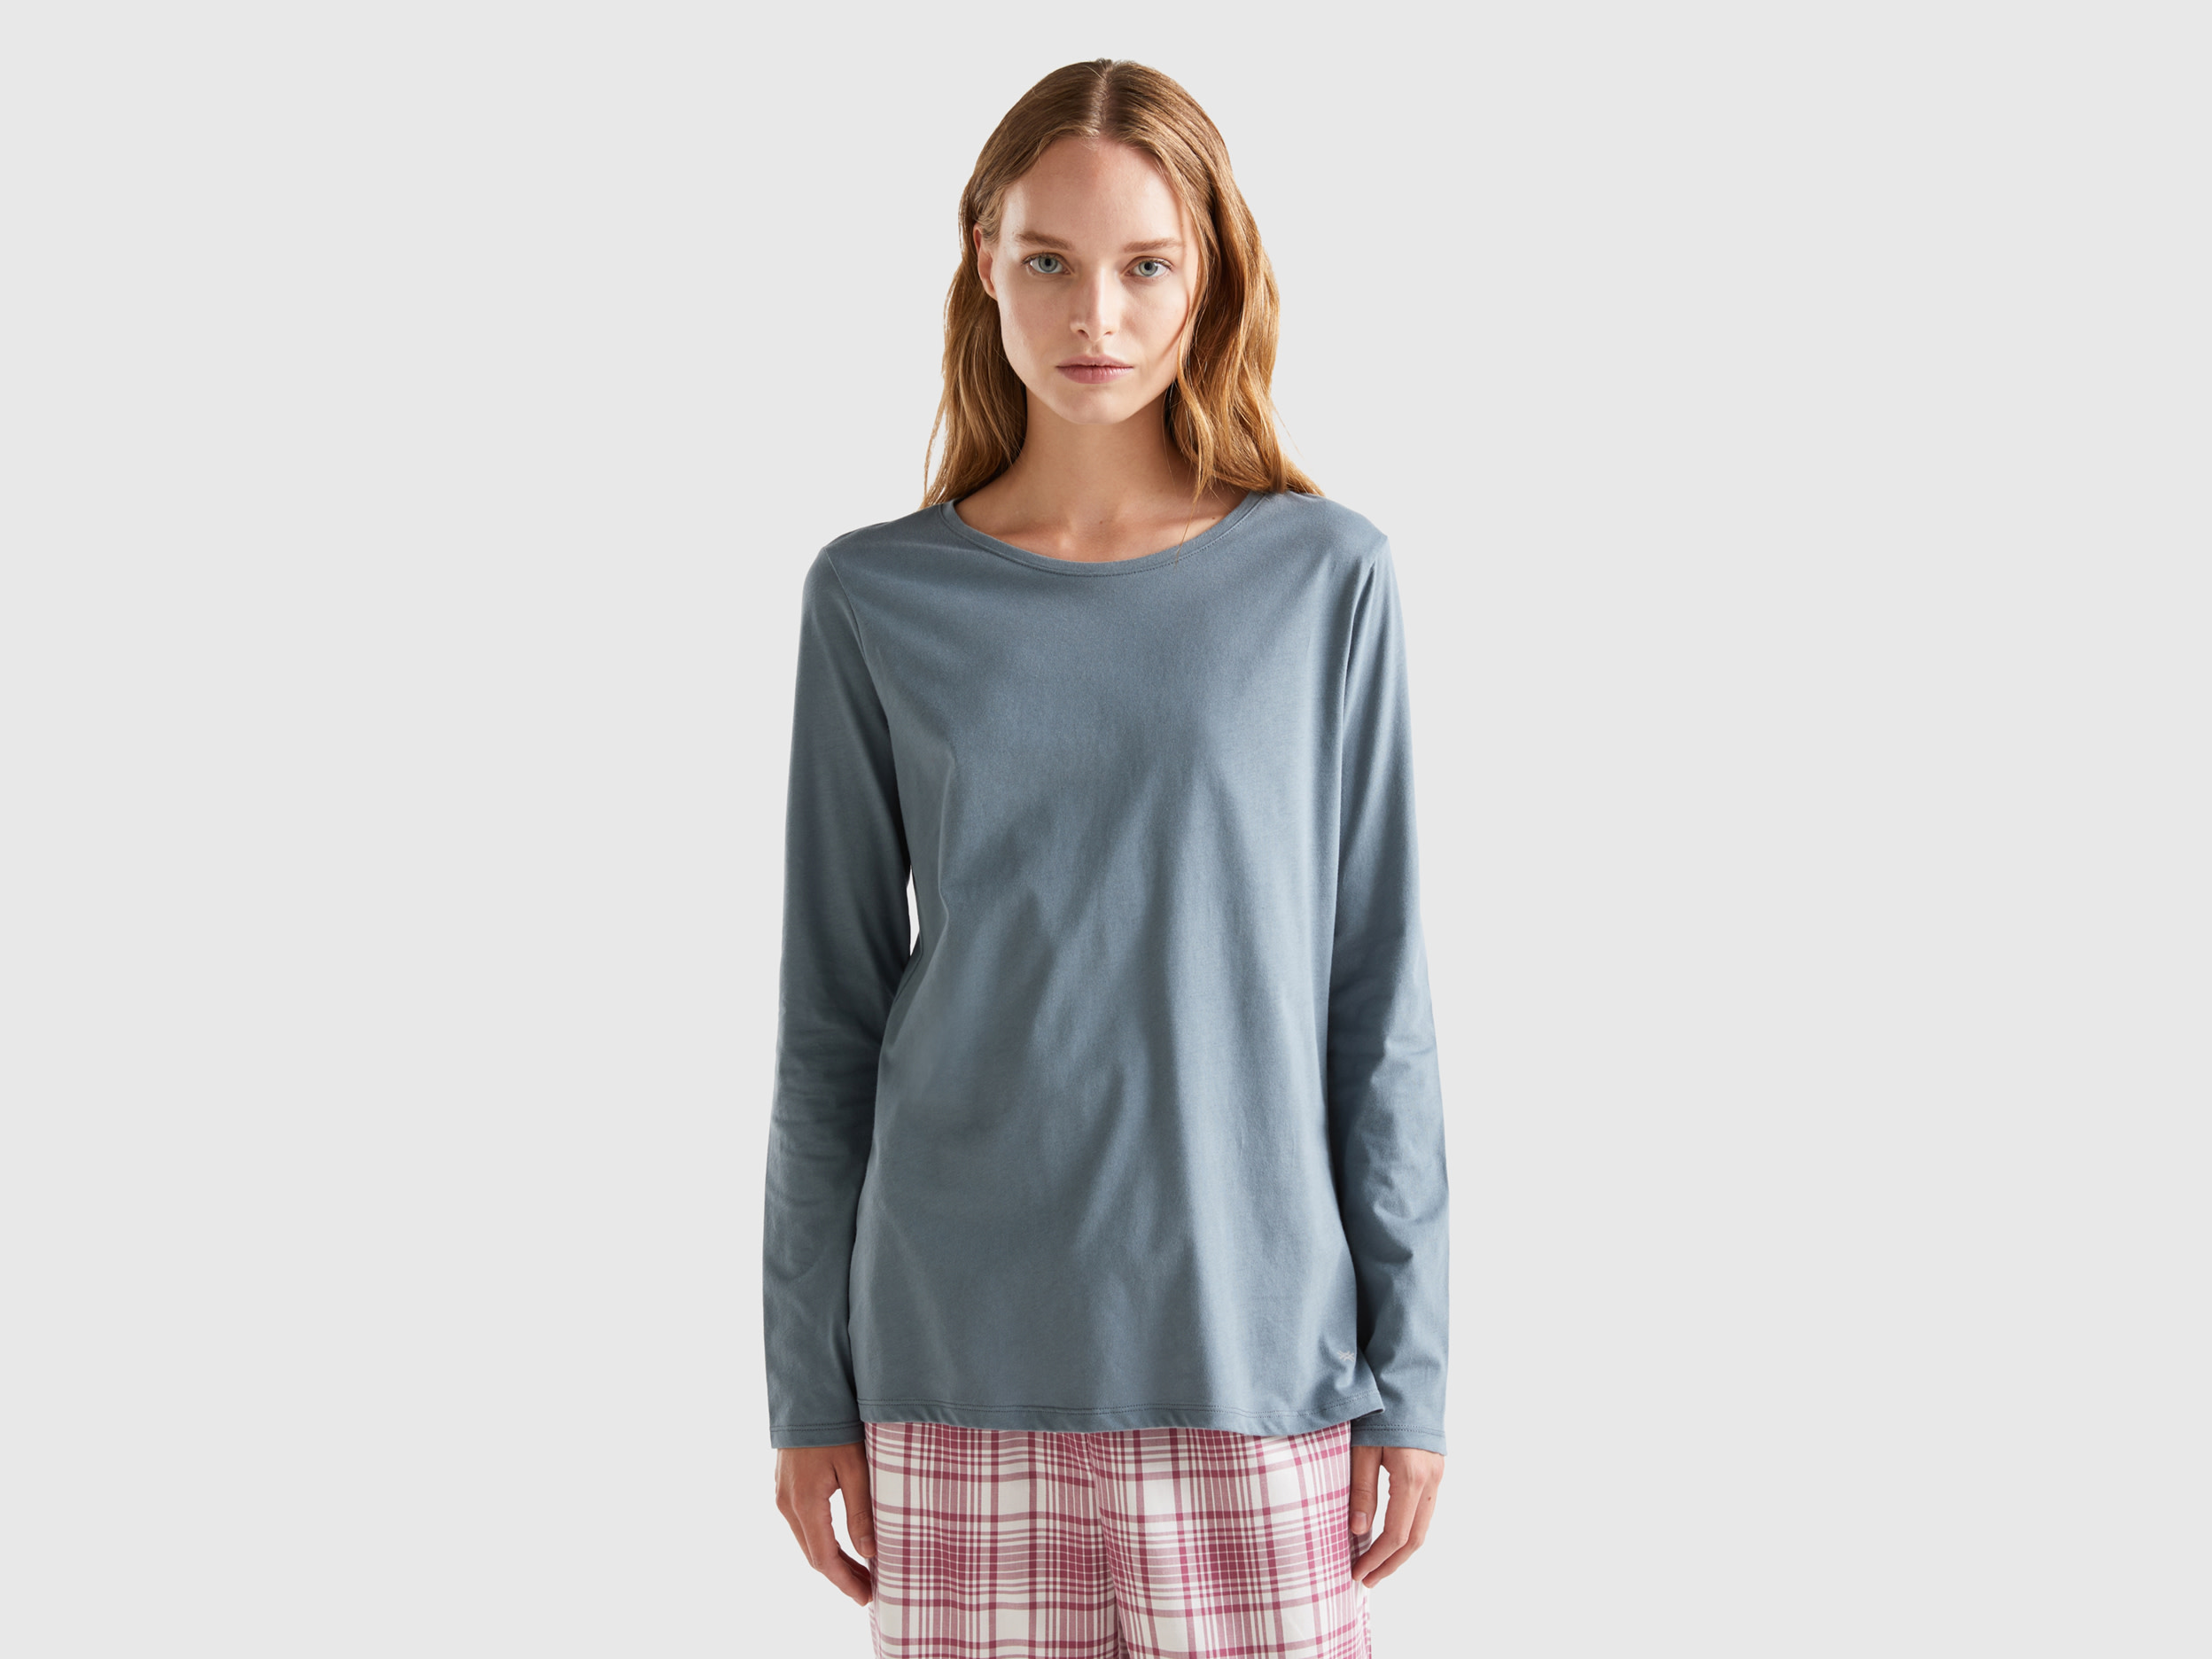 Benetton, Long Fiber Cotton T-shirt, size L, Dark Gray, Women